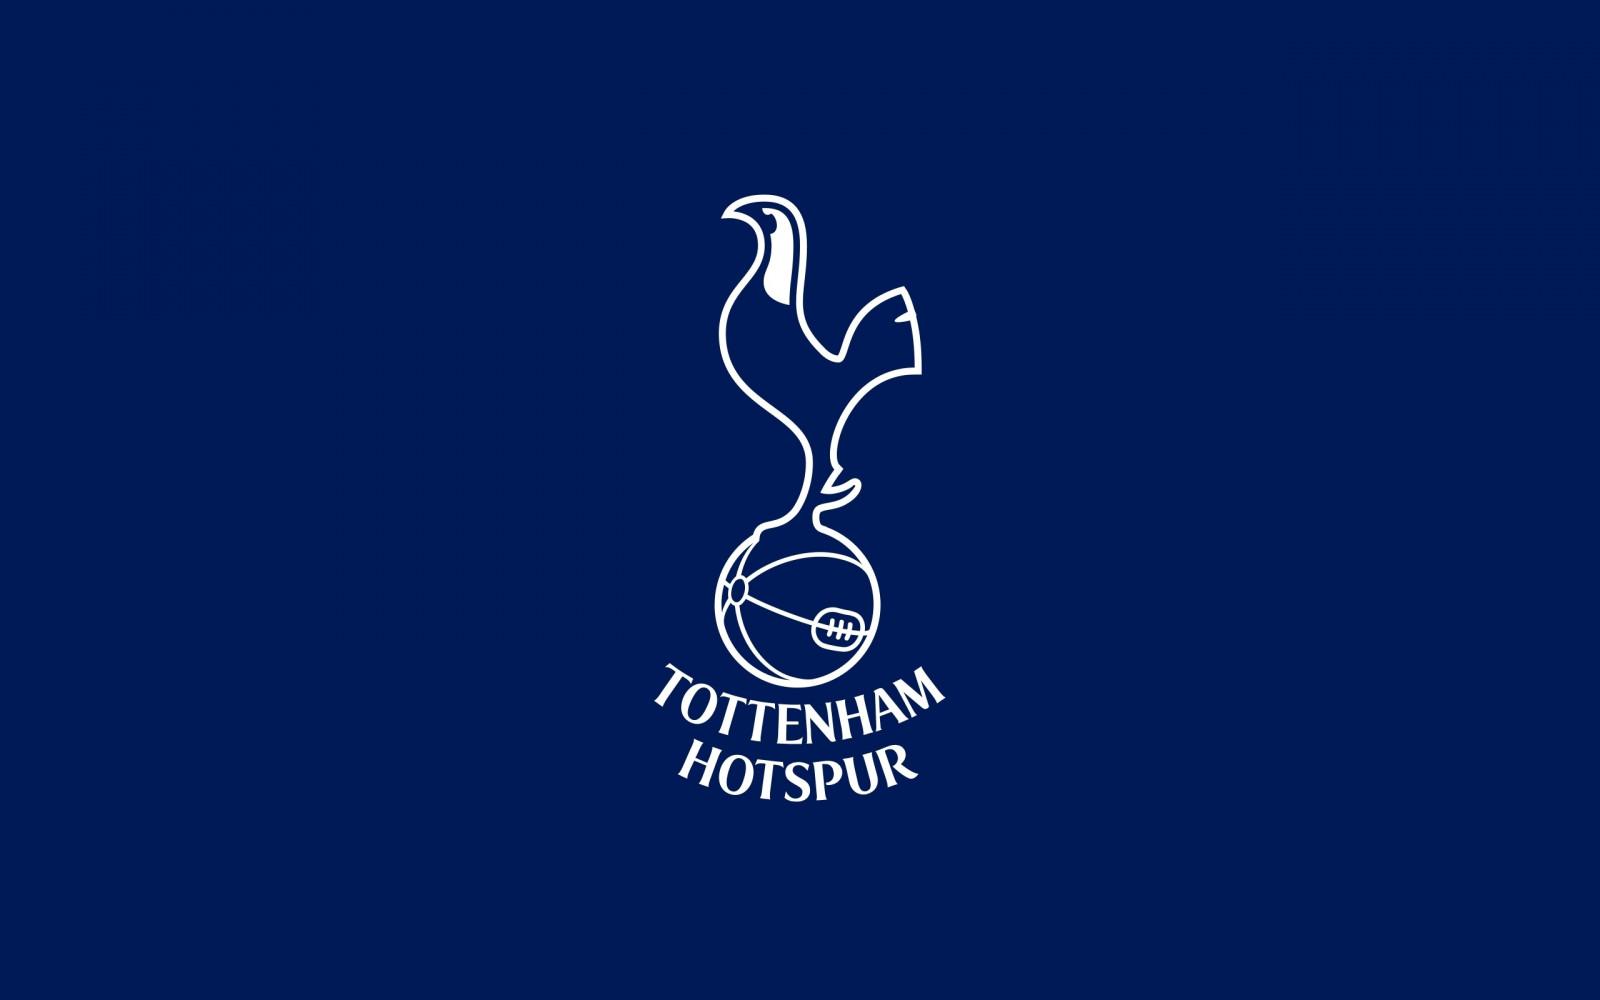 câu lạc bộ bóng đá Tottenham